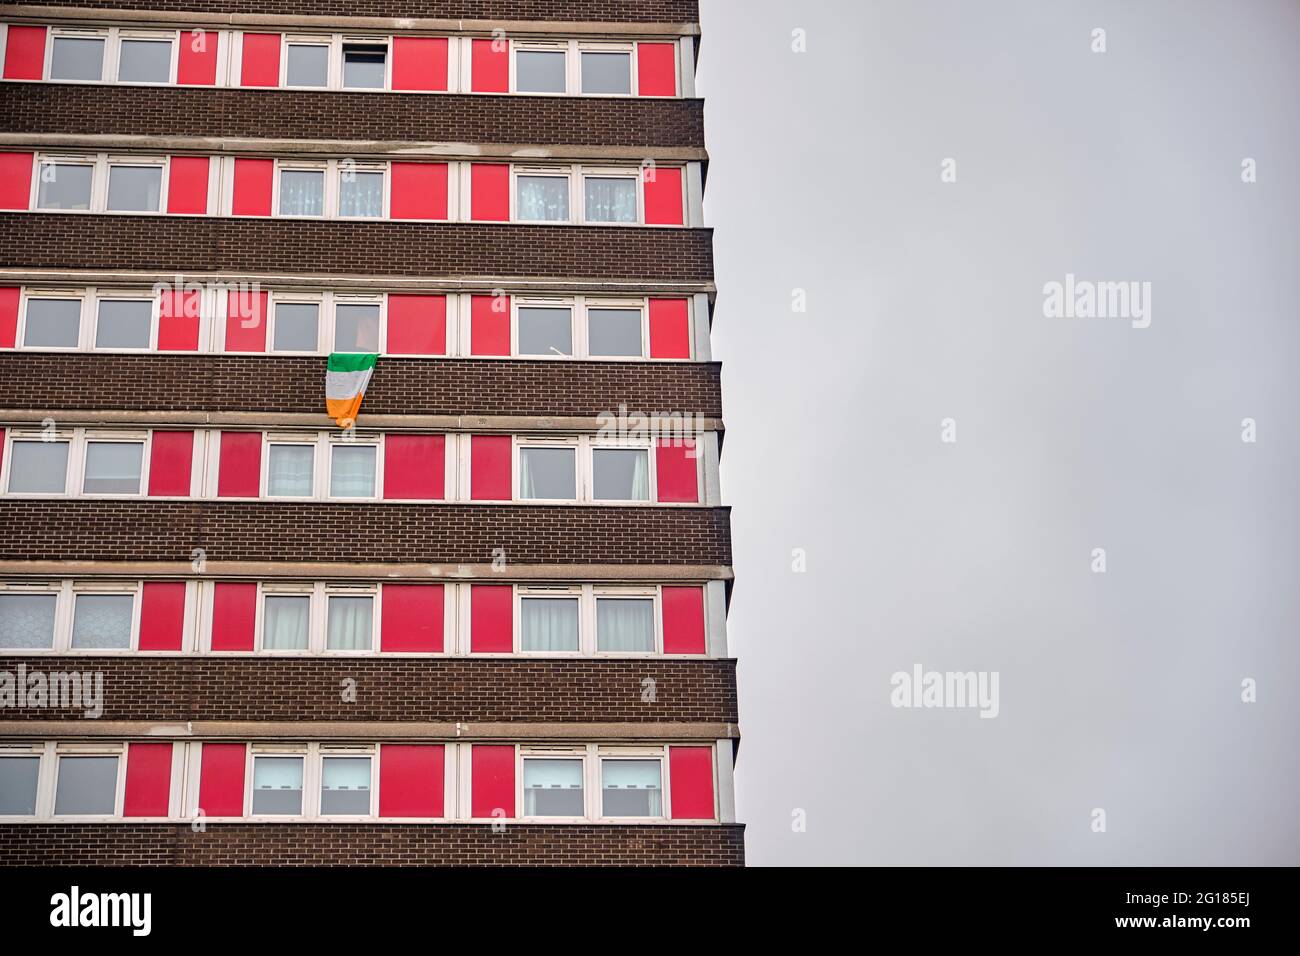 Irische Republikaner Flagge außerhalb des historischen Divis Tower, Belfast, Nordirland, Vereinigtes Königreich, 2018 Stockfoto